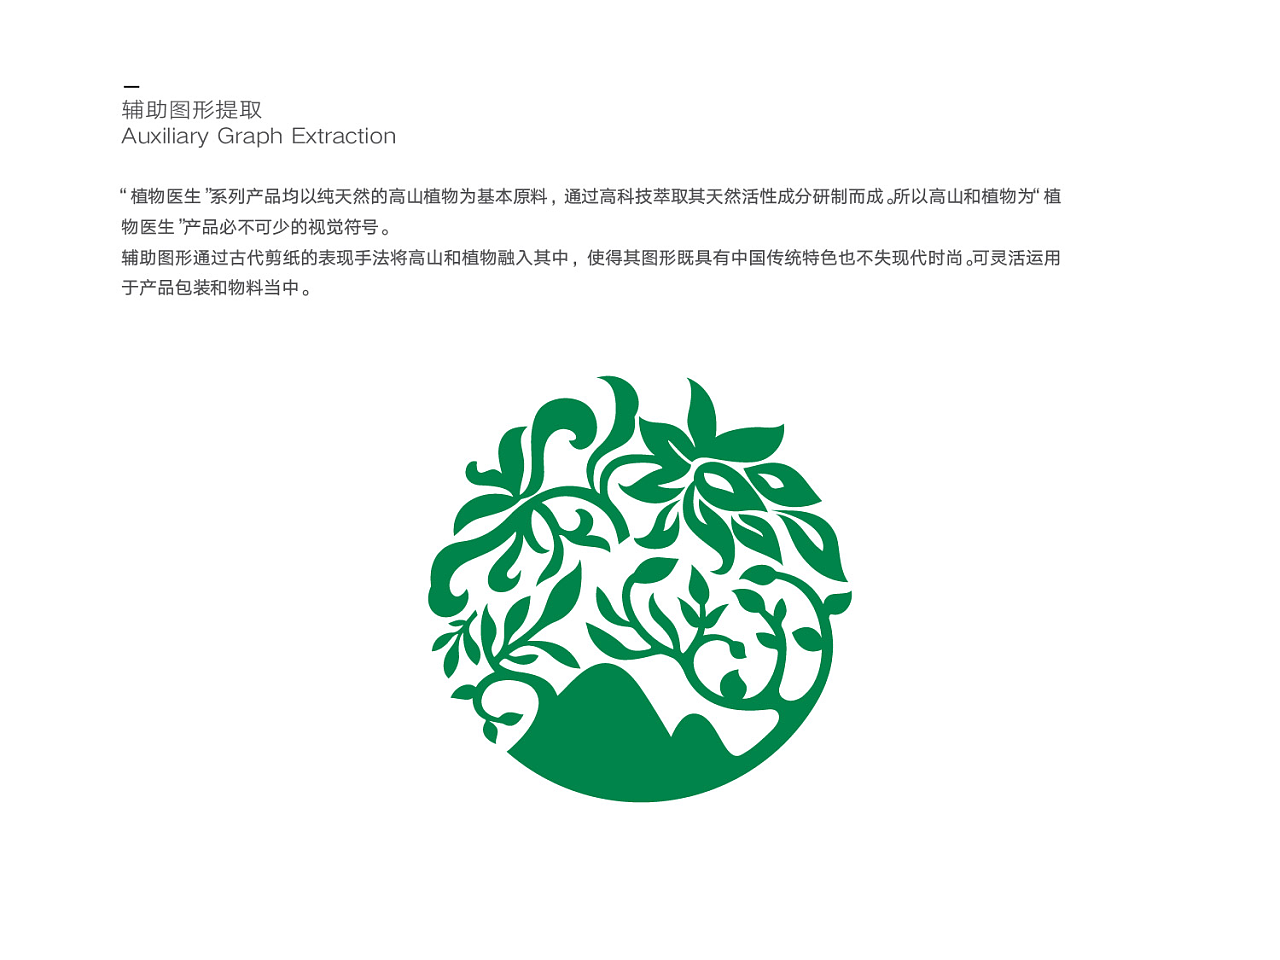 植物医生logo矢量图图片